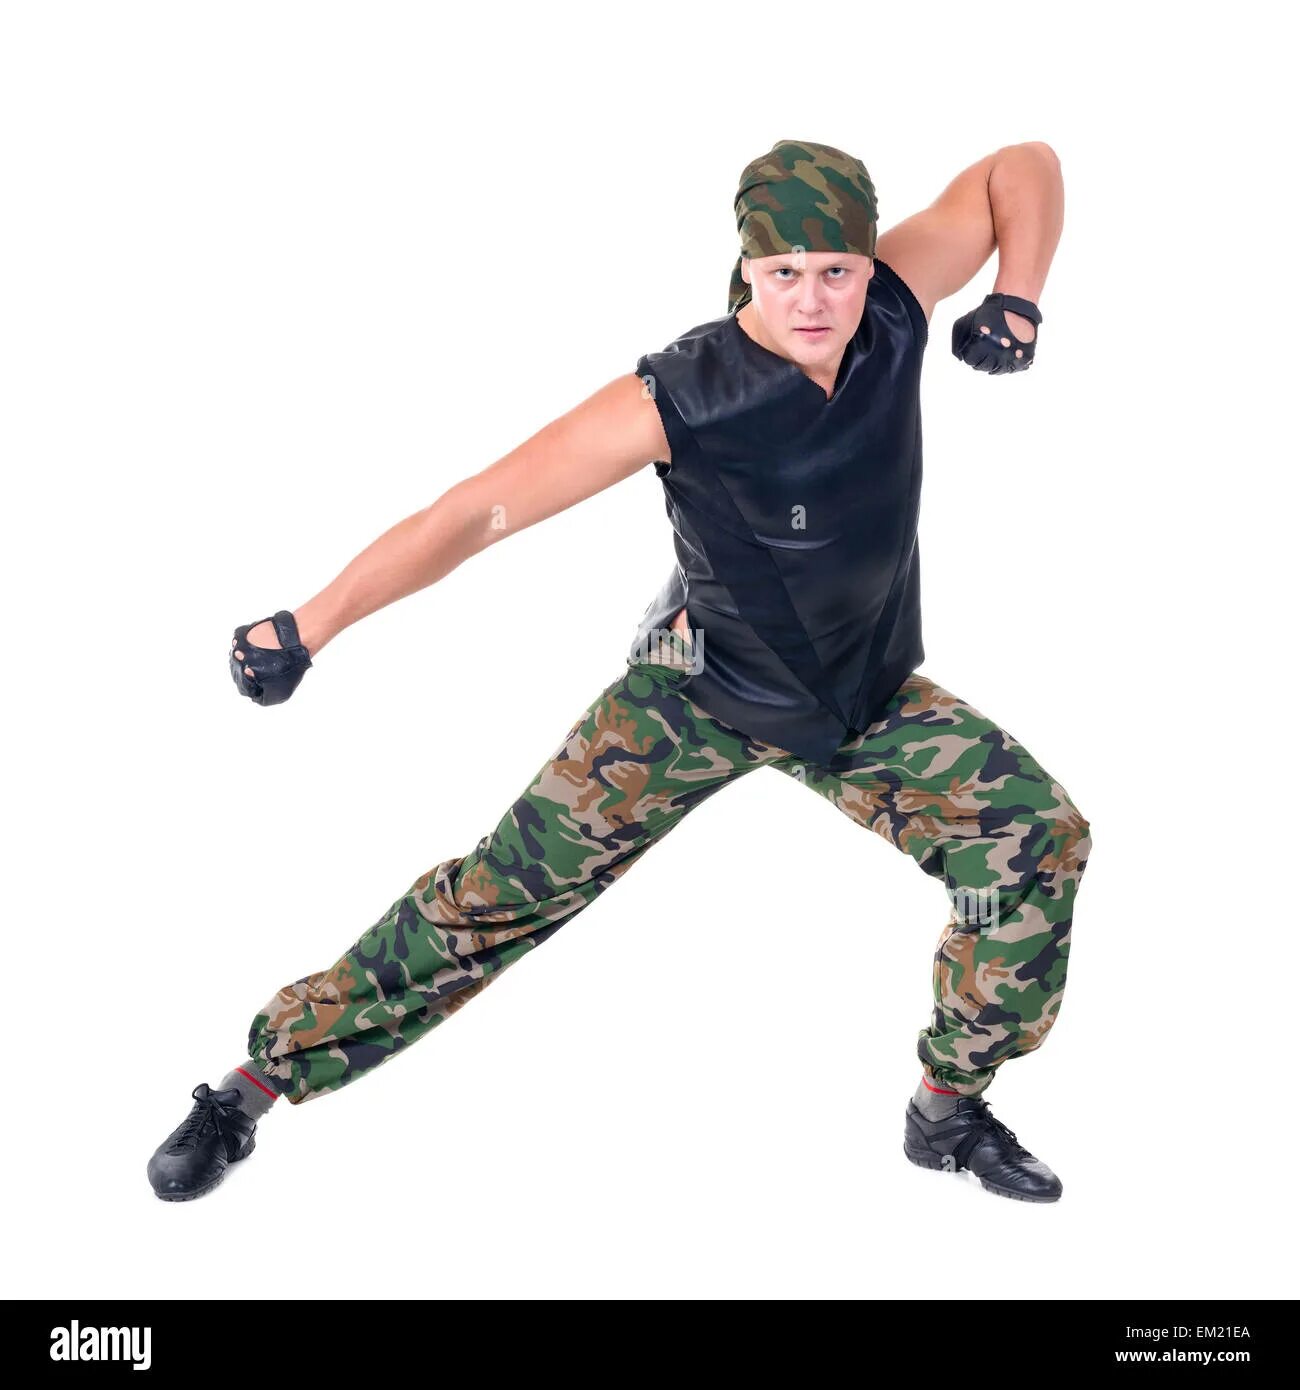 Платье в солдатики. Soldier jumping. Что такое: зеленое, лысое и скачет? Солдат на дискотеке.